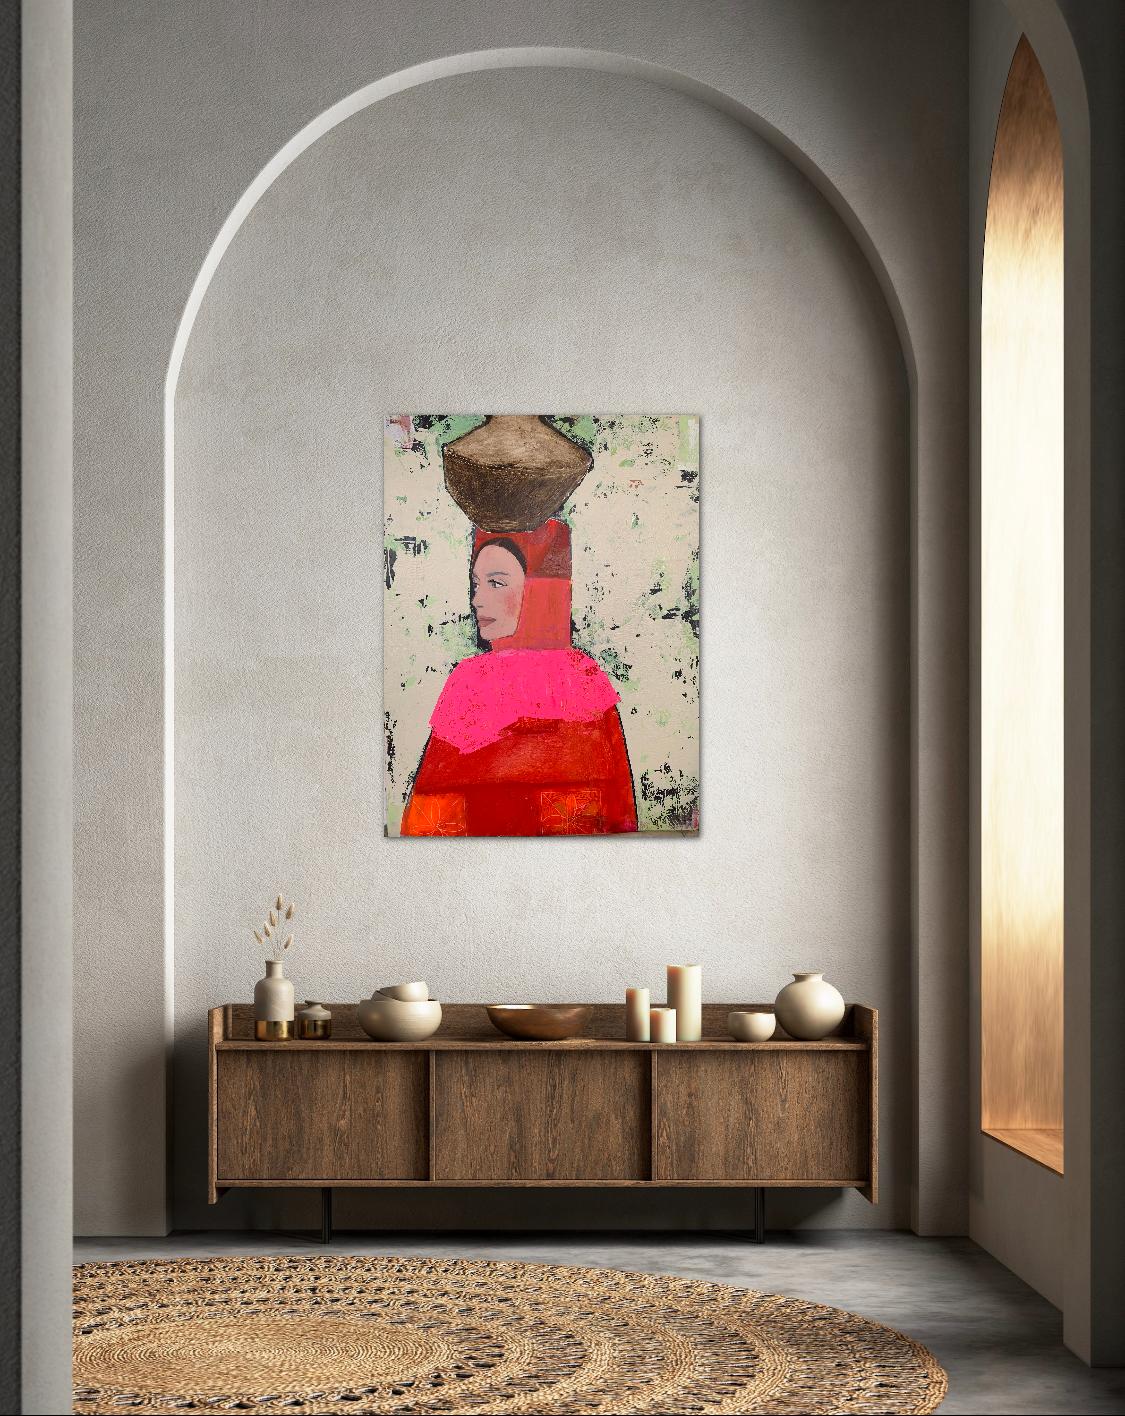 Porteuse de pot avec châle rose - Couleur vive Portrait, Femme, Texture, Visage - Painting de Nicolle Menegaldo